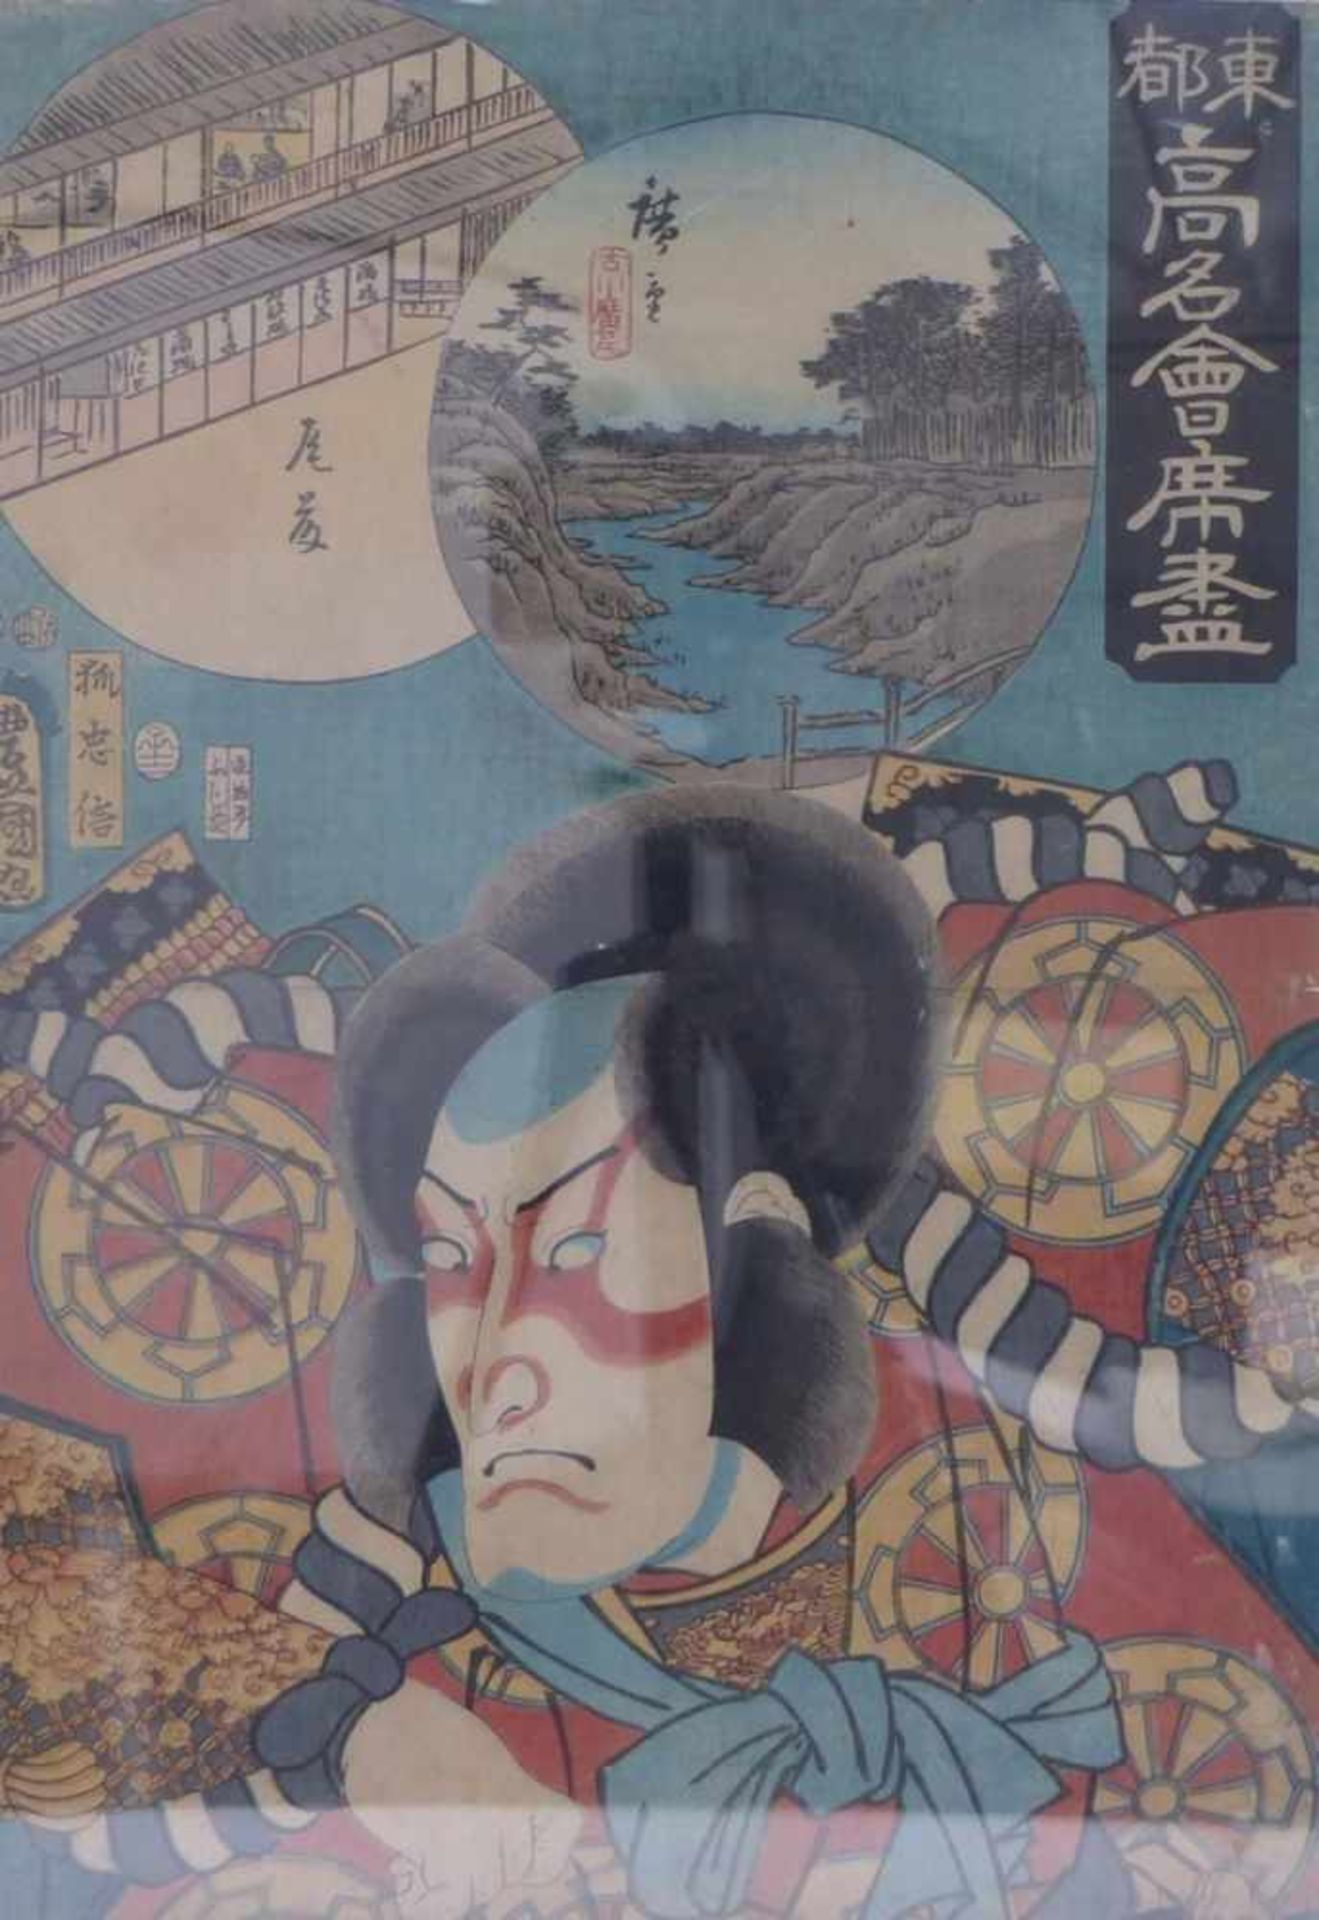 Utagawa Kunisada and Utagawa Hiroshige